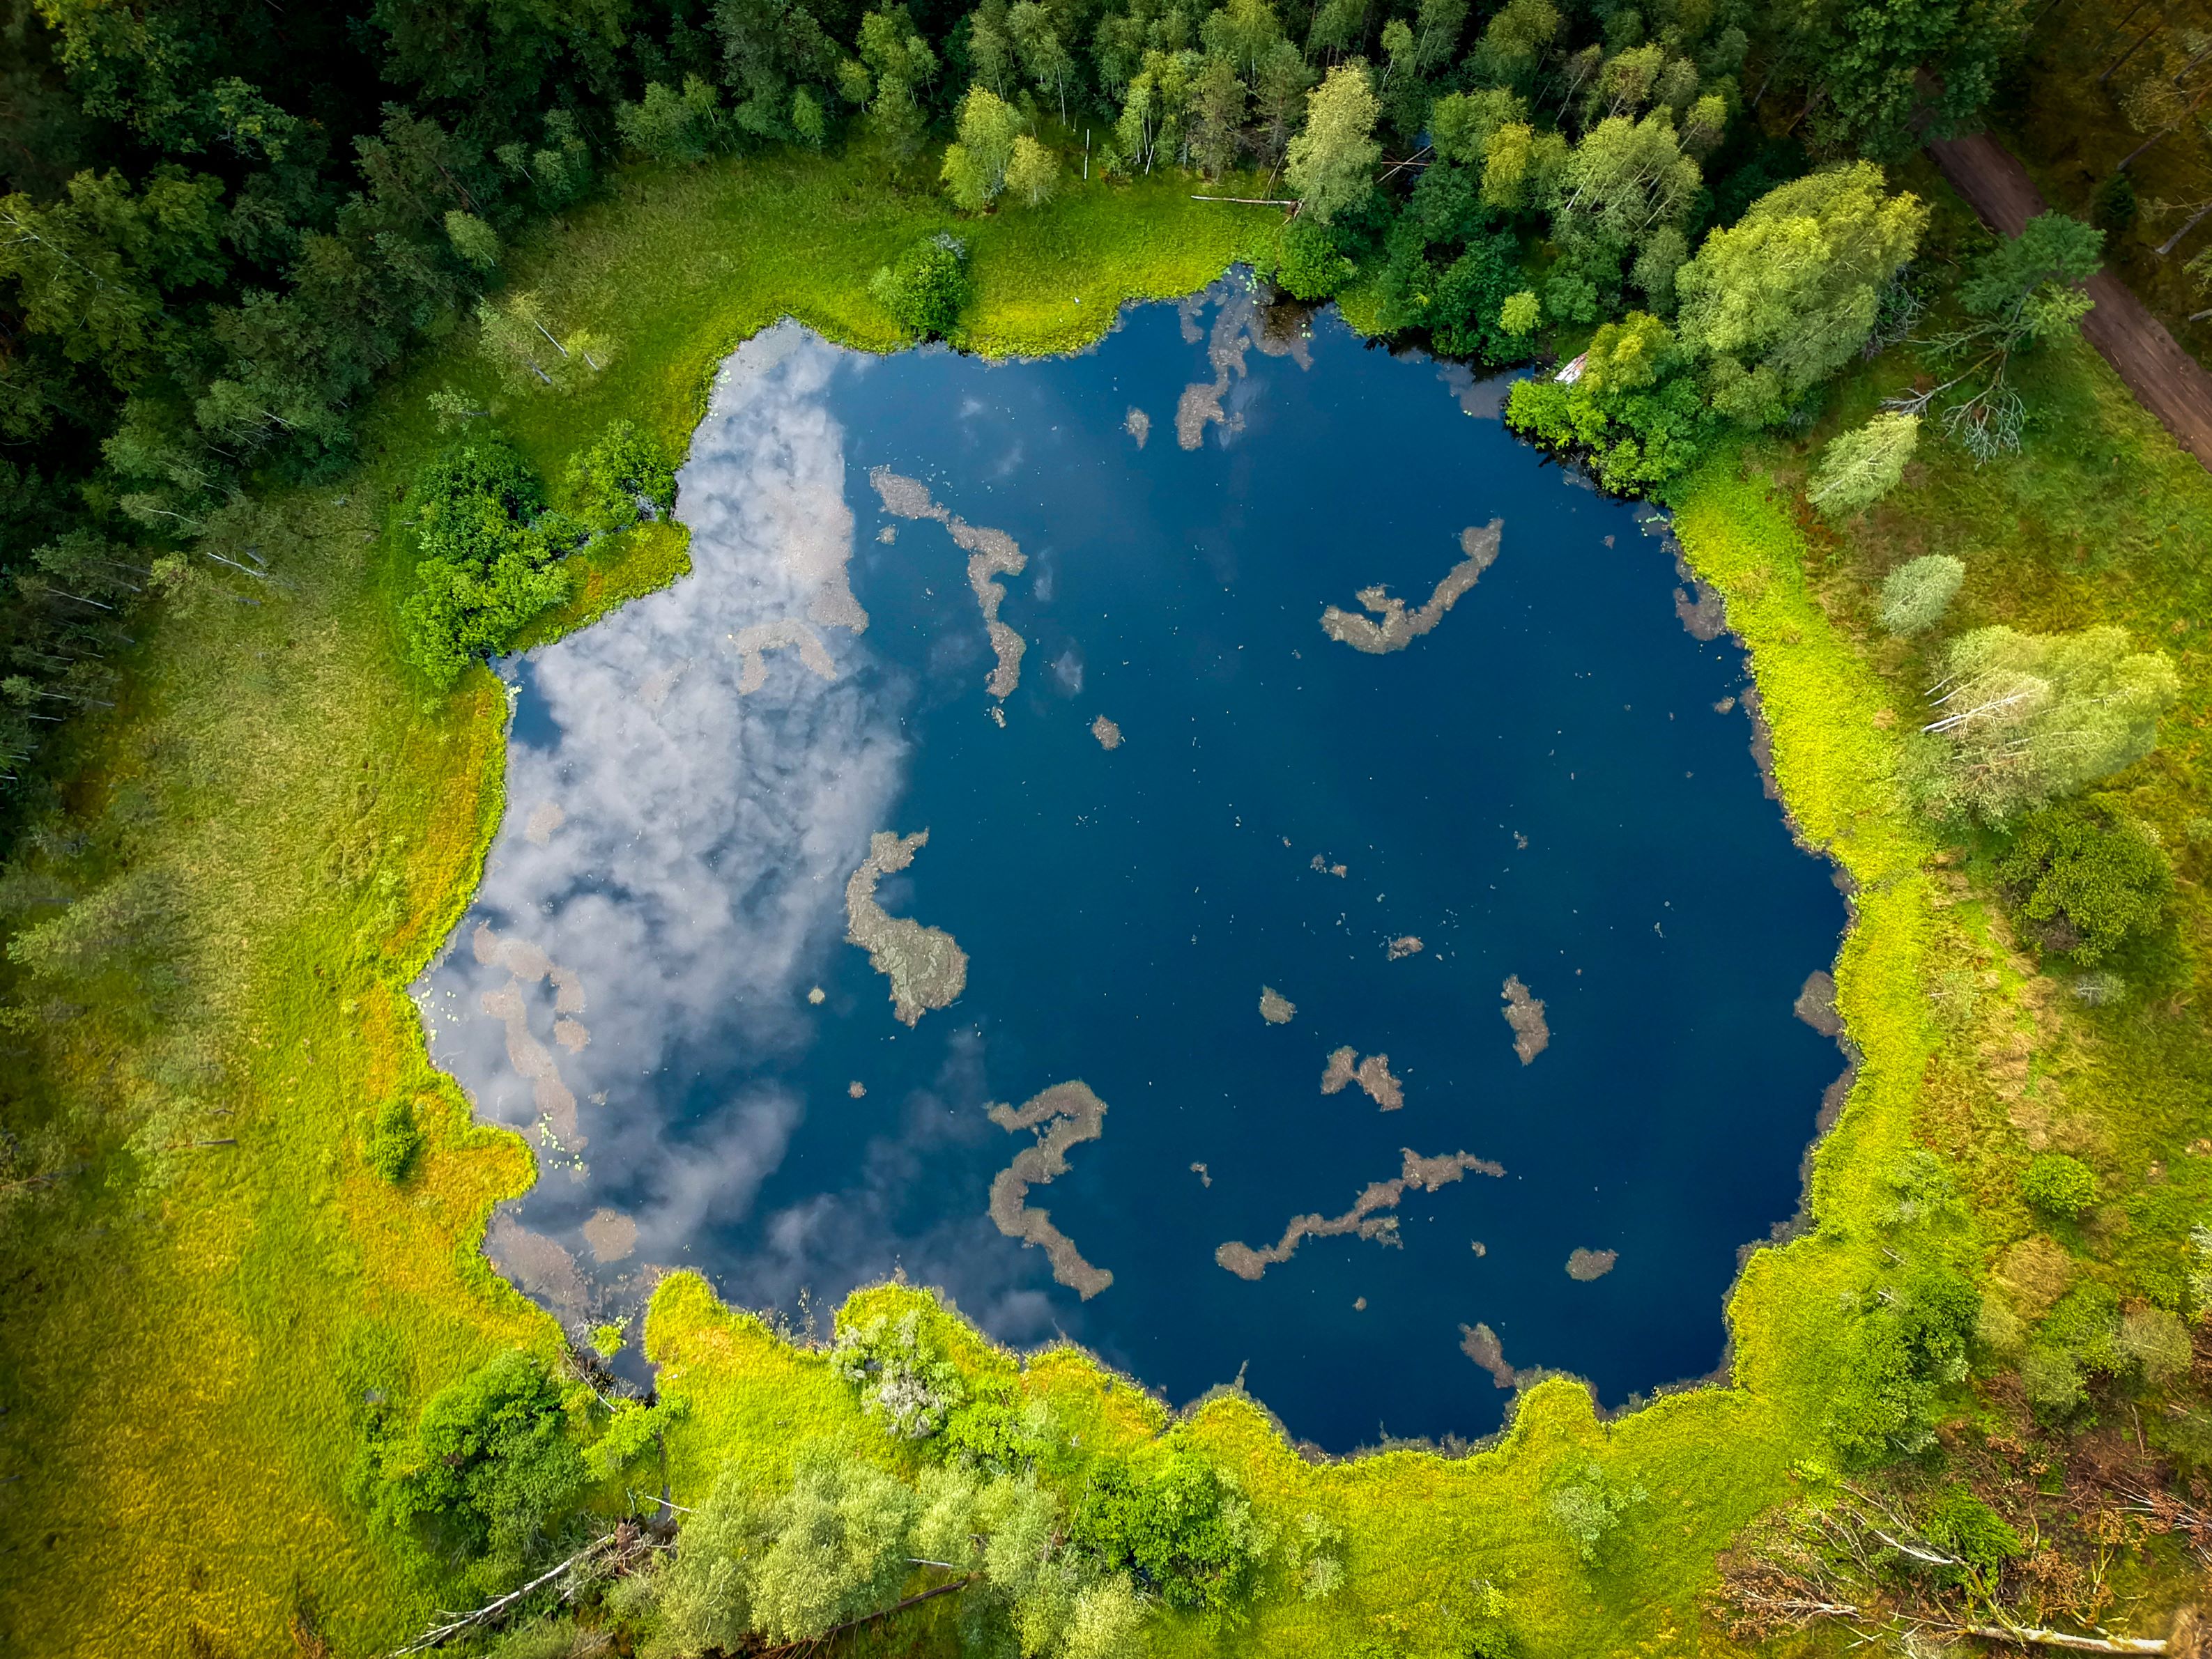 Zdjęcie przedstawia widok z lotu ptaka na zarastające jezioro otoczone lasem. Fot. Leszek Pałys